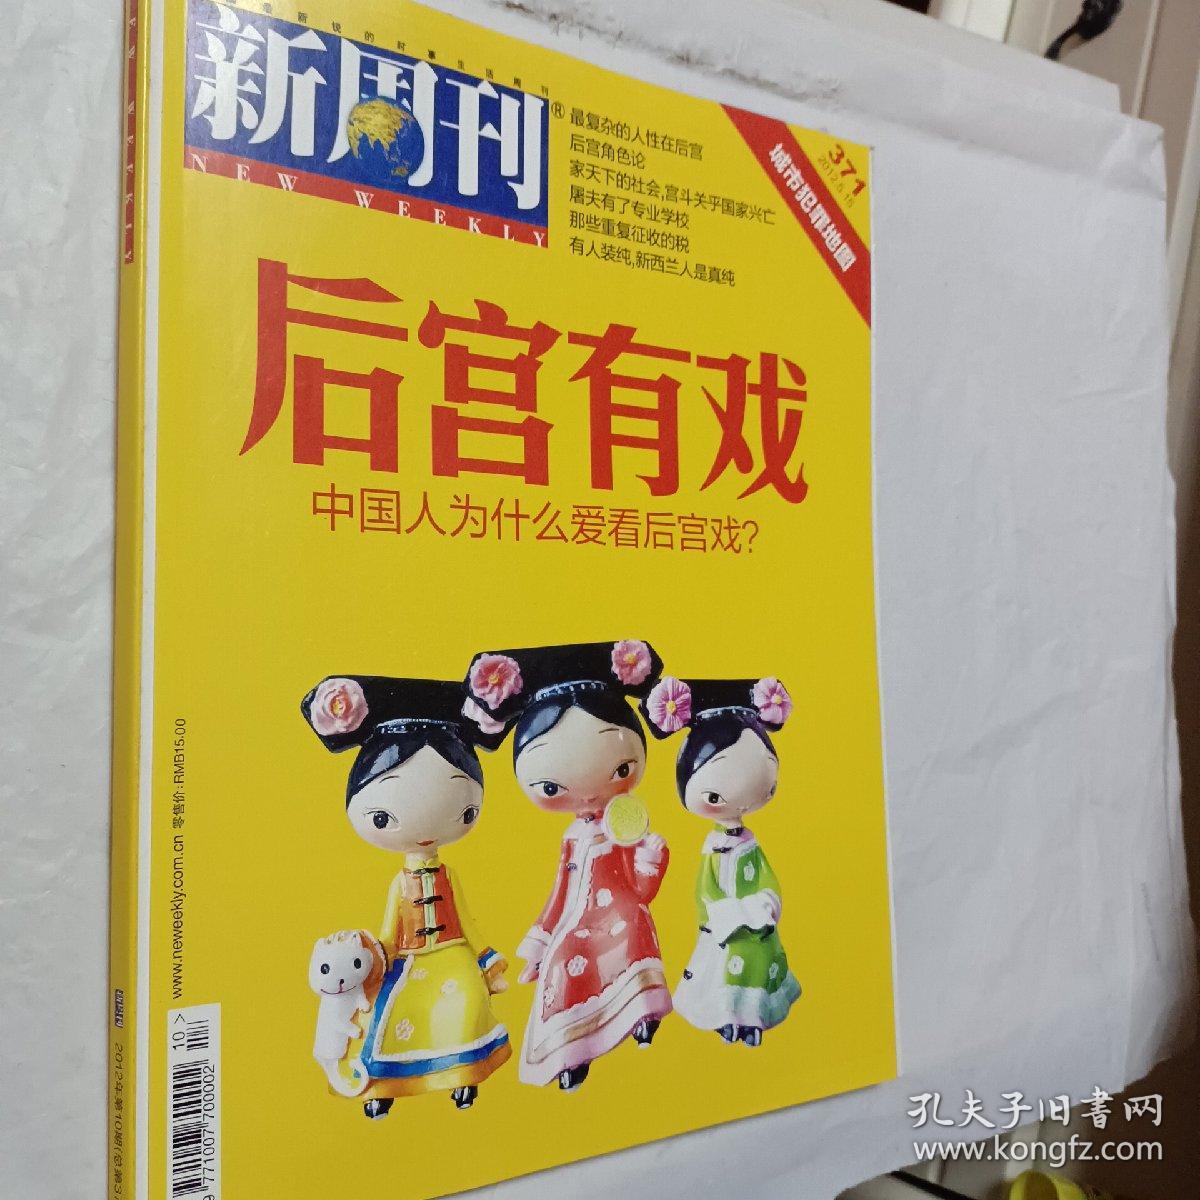 新周刊2012年第9.10.14期，后宫有戏，中国人为什么爱看后宫戏，梦露性感生死50年，想象的彼岸与真实的对岸，台湾最美的风景是人，可选择购买，开发票加6点税